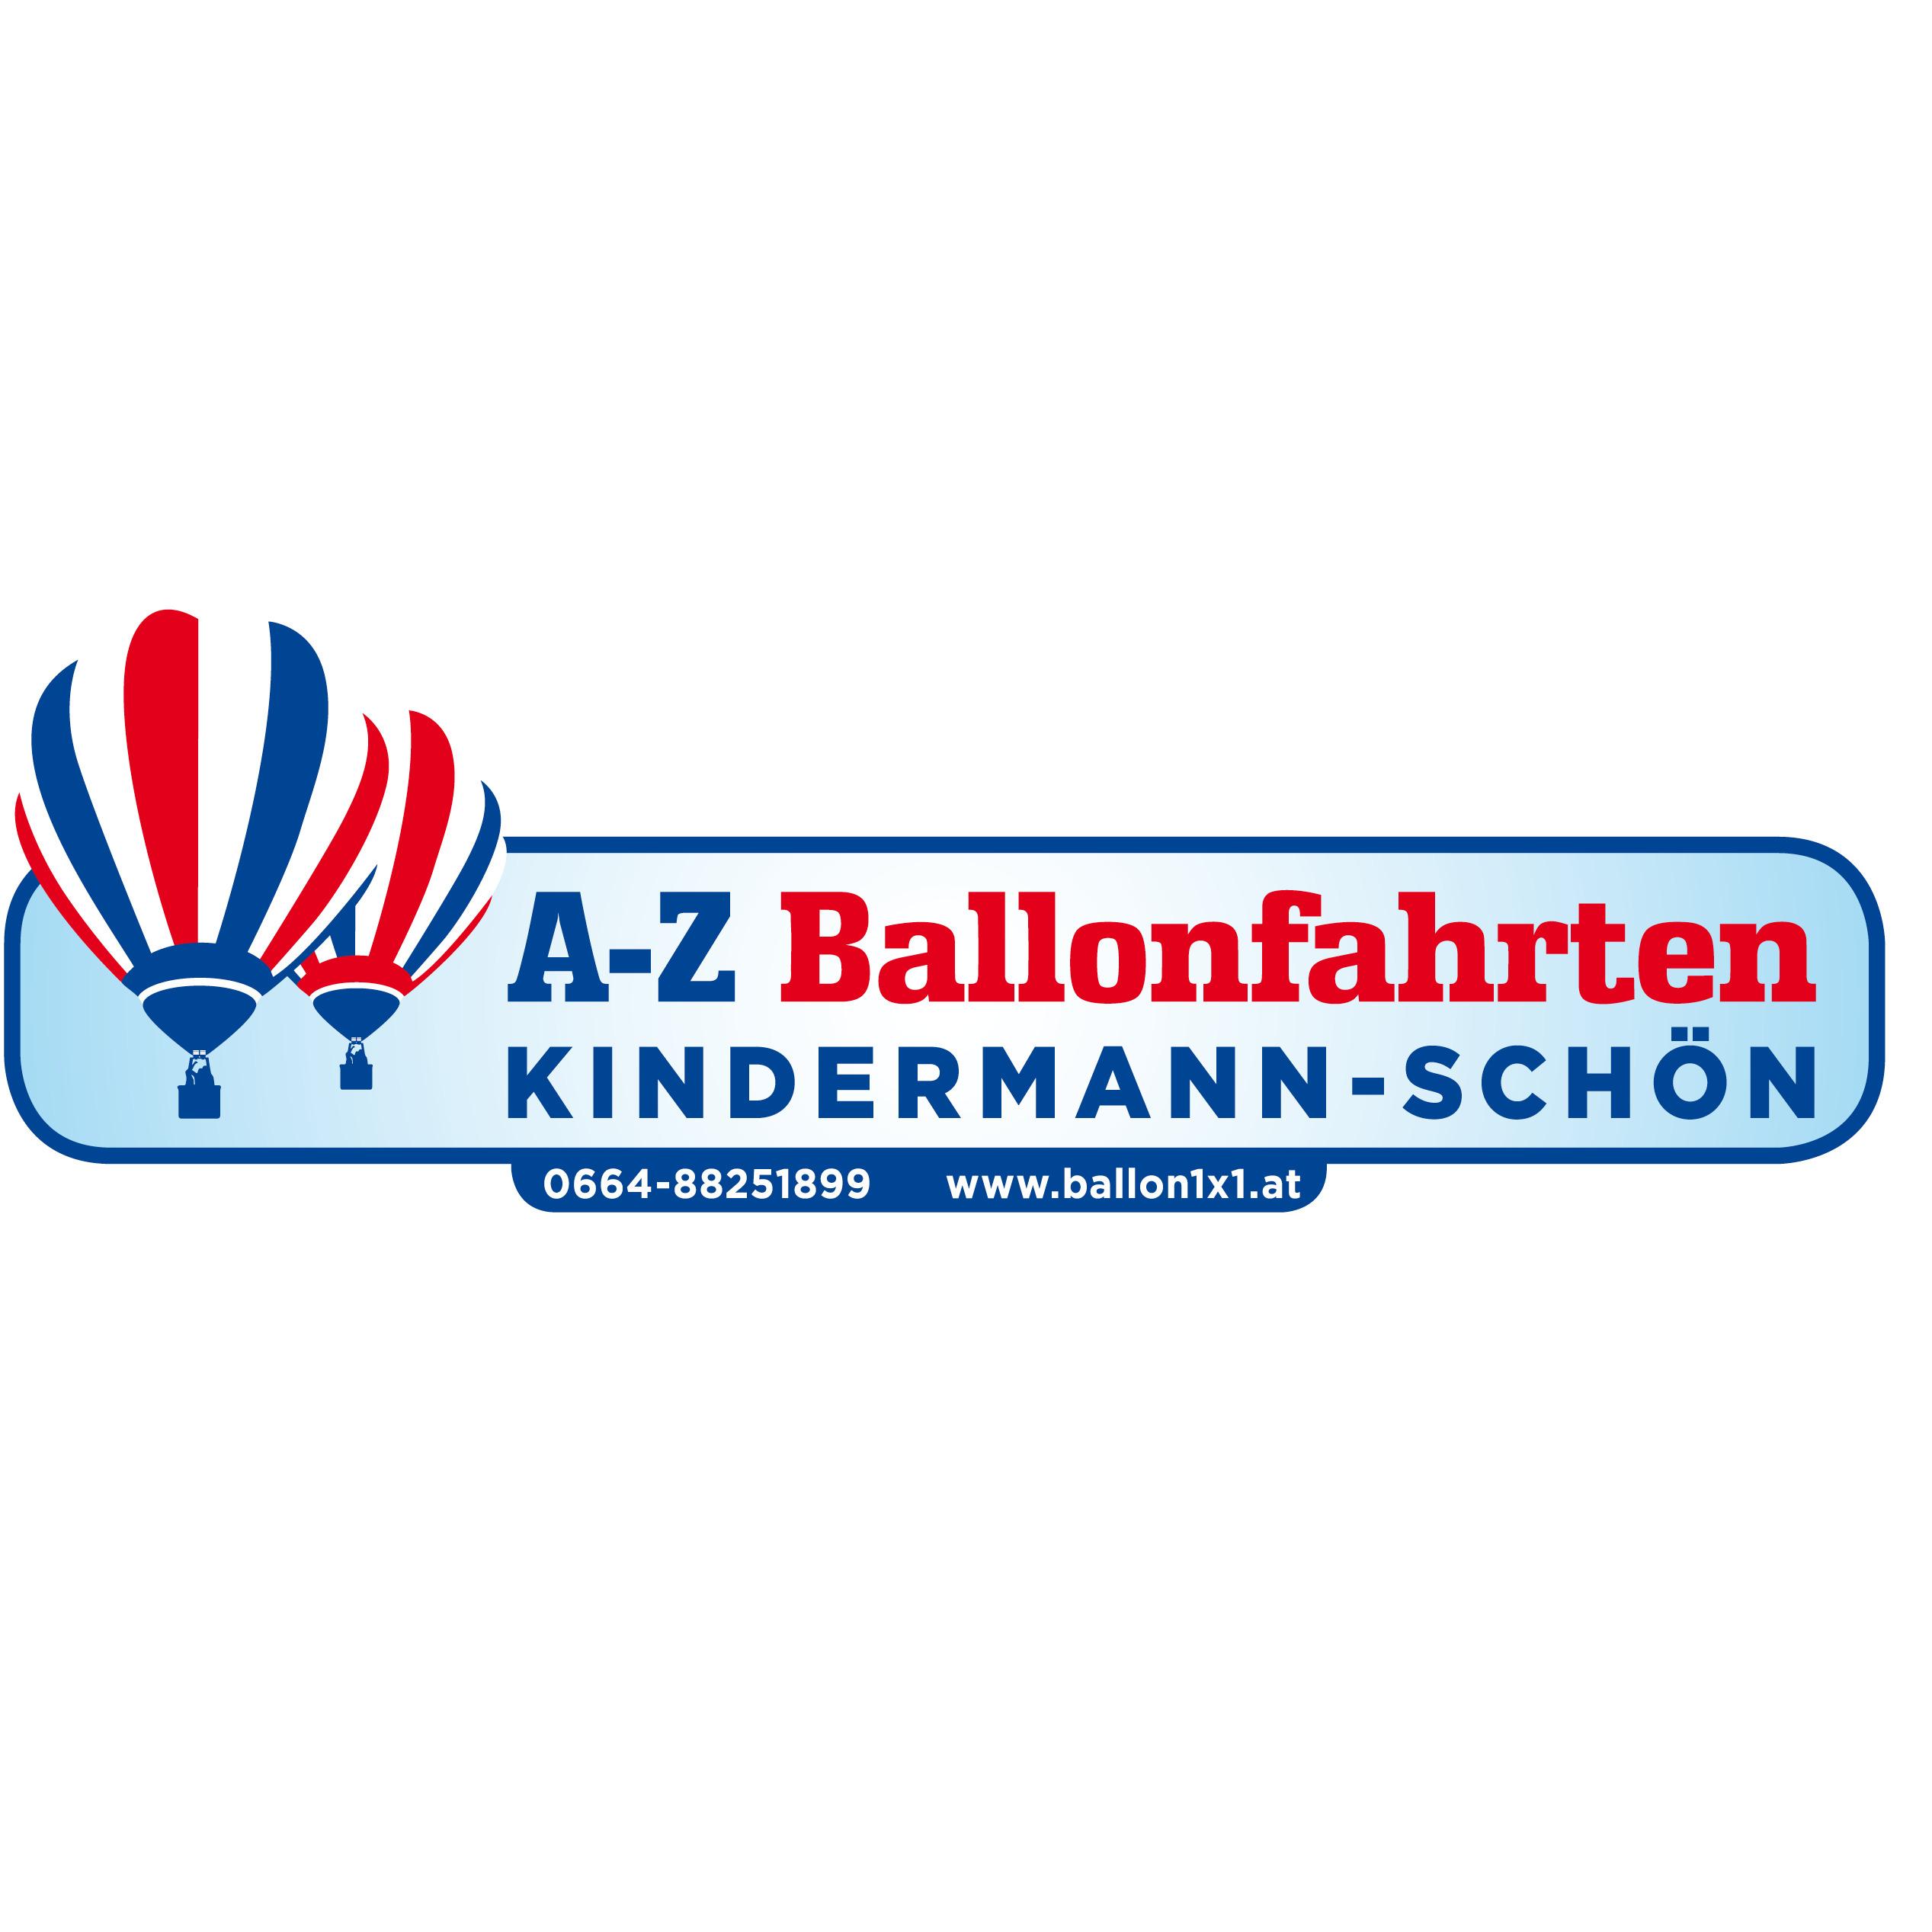 A-Z Ballonfahrten Kindermann-Schön KG in 8271 Bad Waltersdorf Logo A-Z Ballonfahrten Kindermann-Schön KG Bad Waltersdorf 0664 88251899